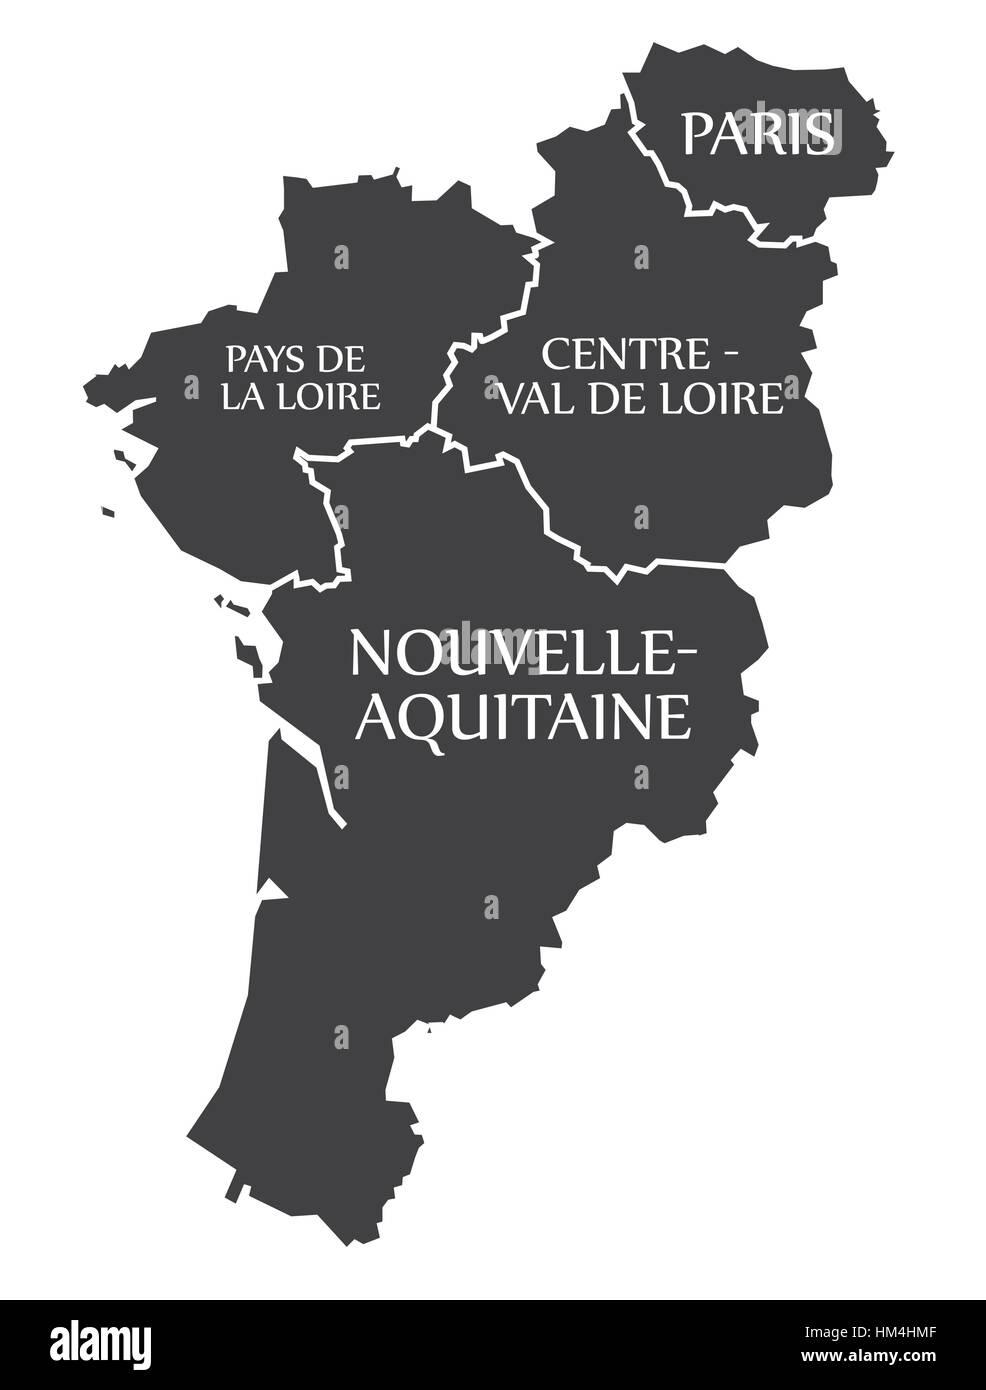 Pays de la Loire - Parigi - Centro - Val de Loire - Nouvelle - Aquitaine Francia Mappa immagine Illustrazione Vettoriale